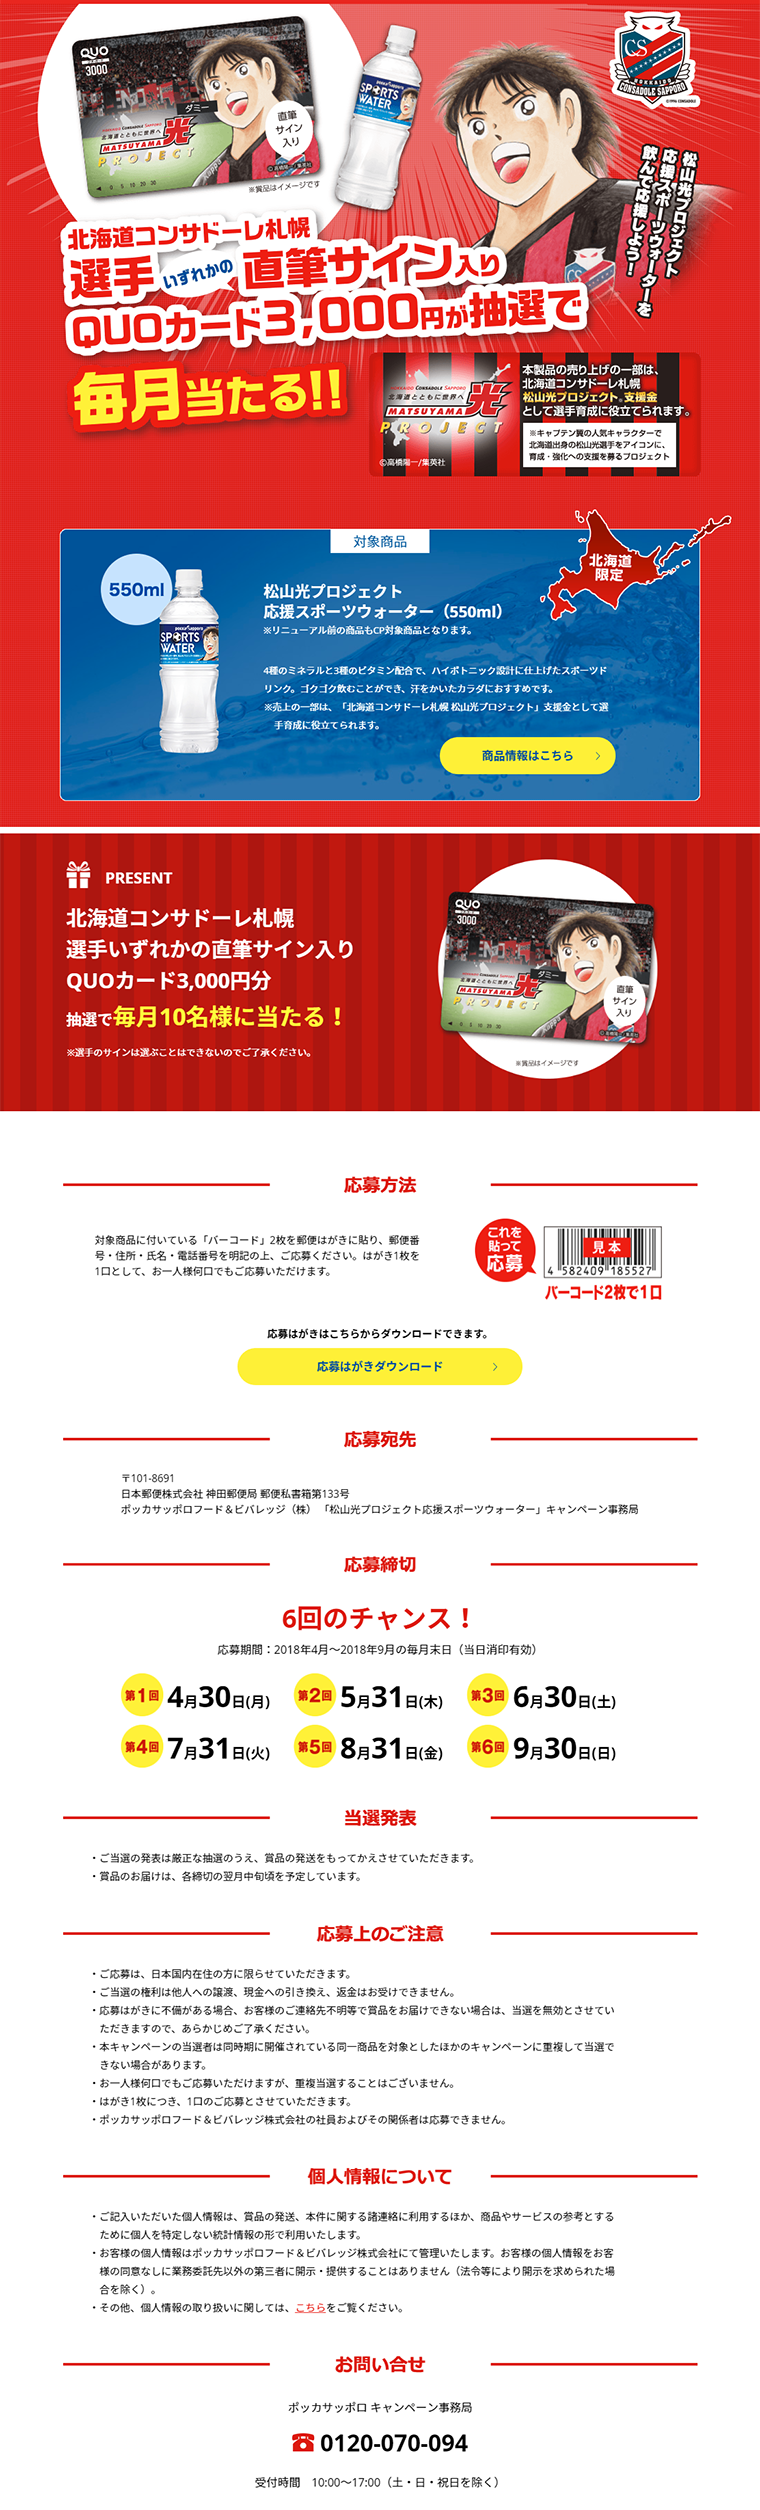 松山光プロジェクト応援スポーツウォーターキャンペーン_pc_1